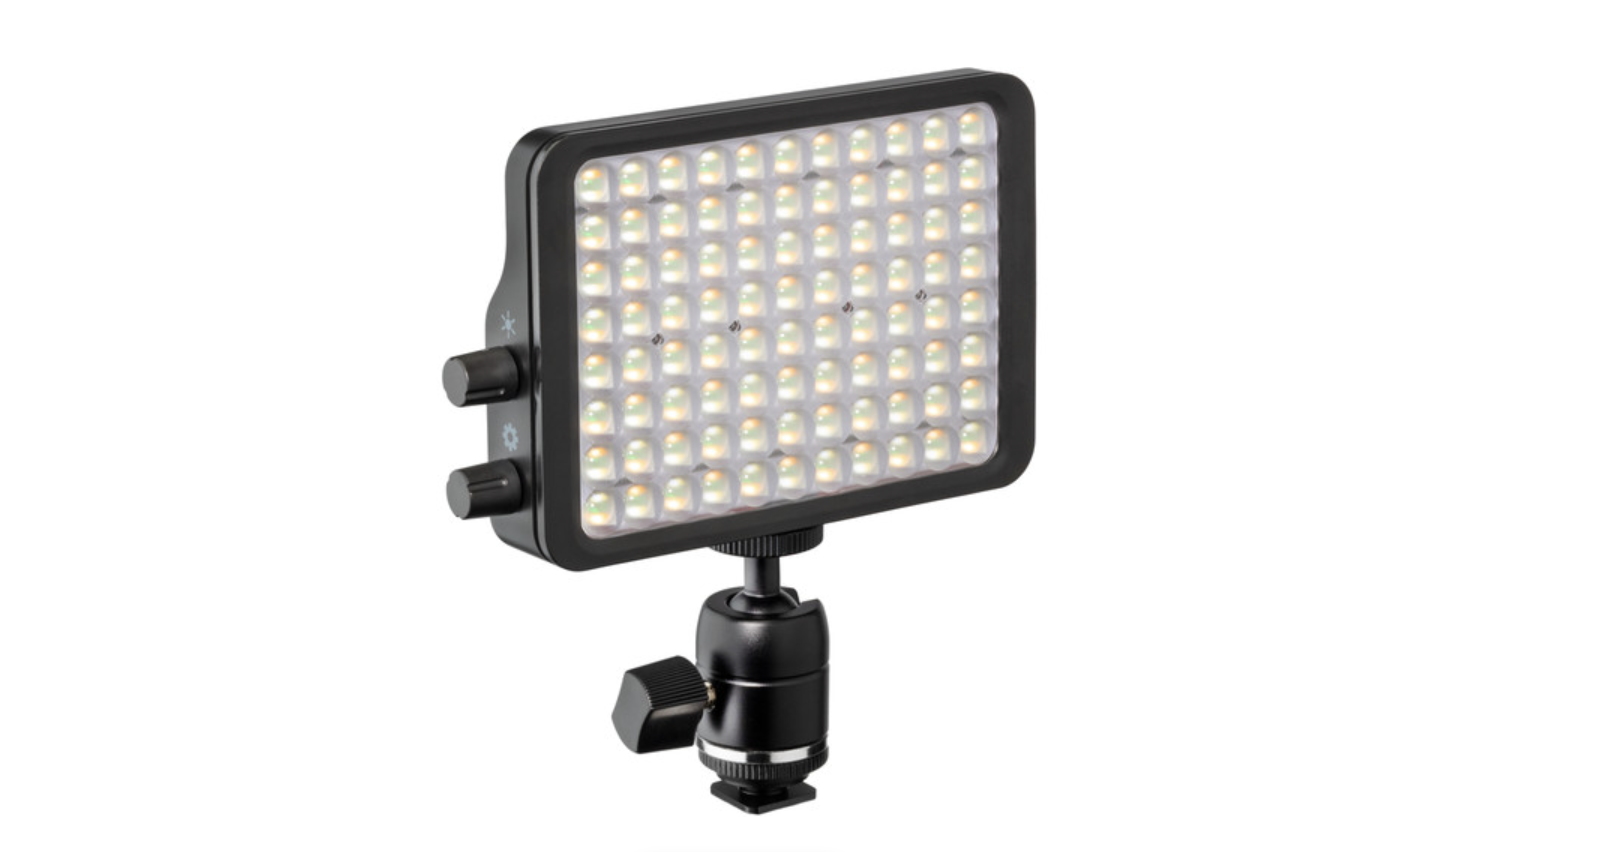 تُباع لوحة الإضاءة Luxli Viola² مقاس 5 بوصات RGB LED المثبتة على الكاميرا بسعر 149 دولارًا أمريكيًا